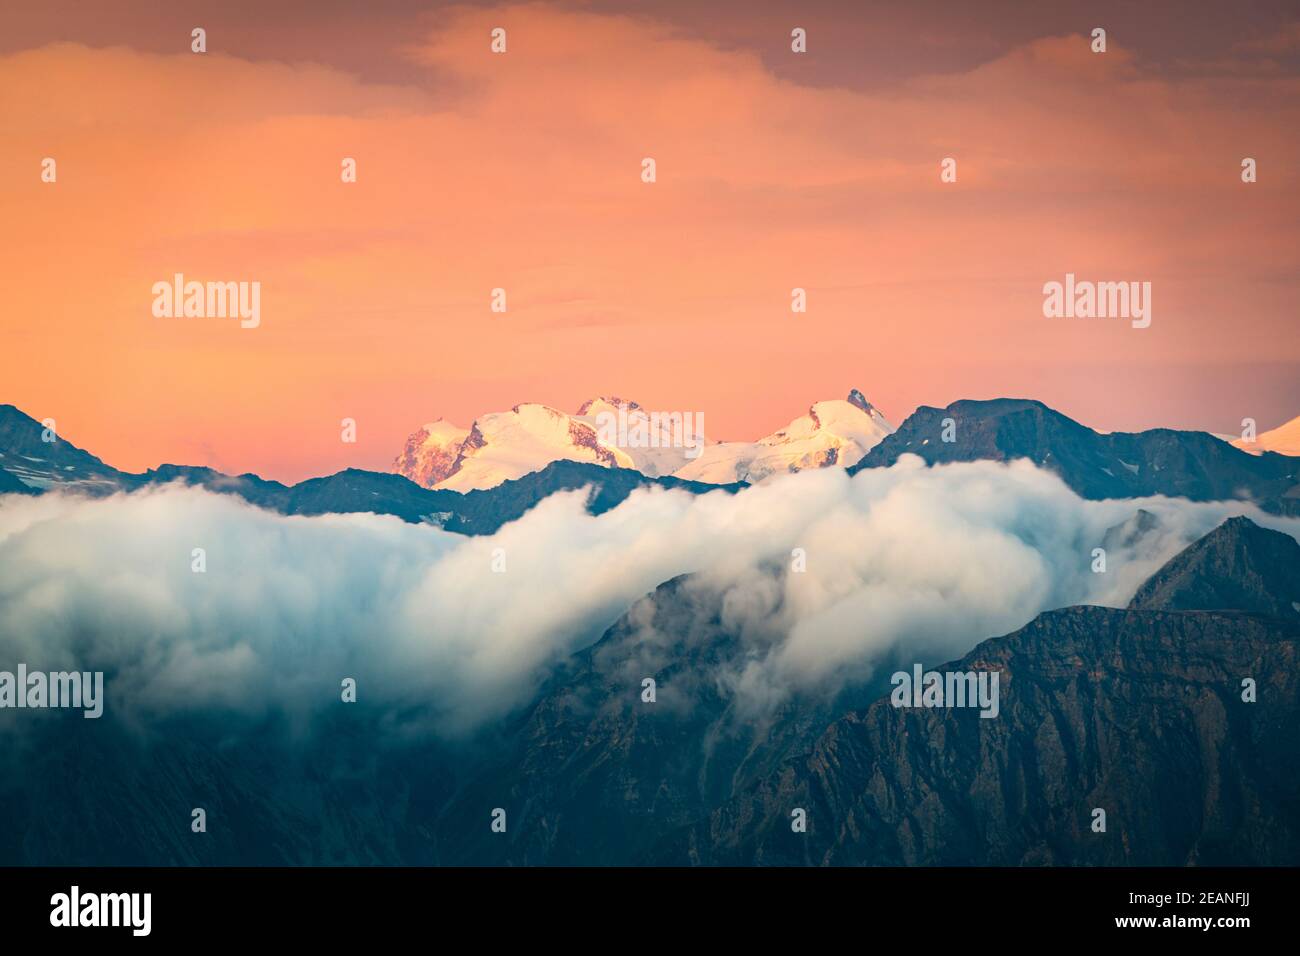 Le ciel brûlant au lever du soleil sur la neige a couvert Monte Rosa entouré d'une mer de nuages, canton du Valais, Suisse, Europe Banque D'Images